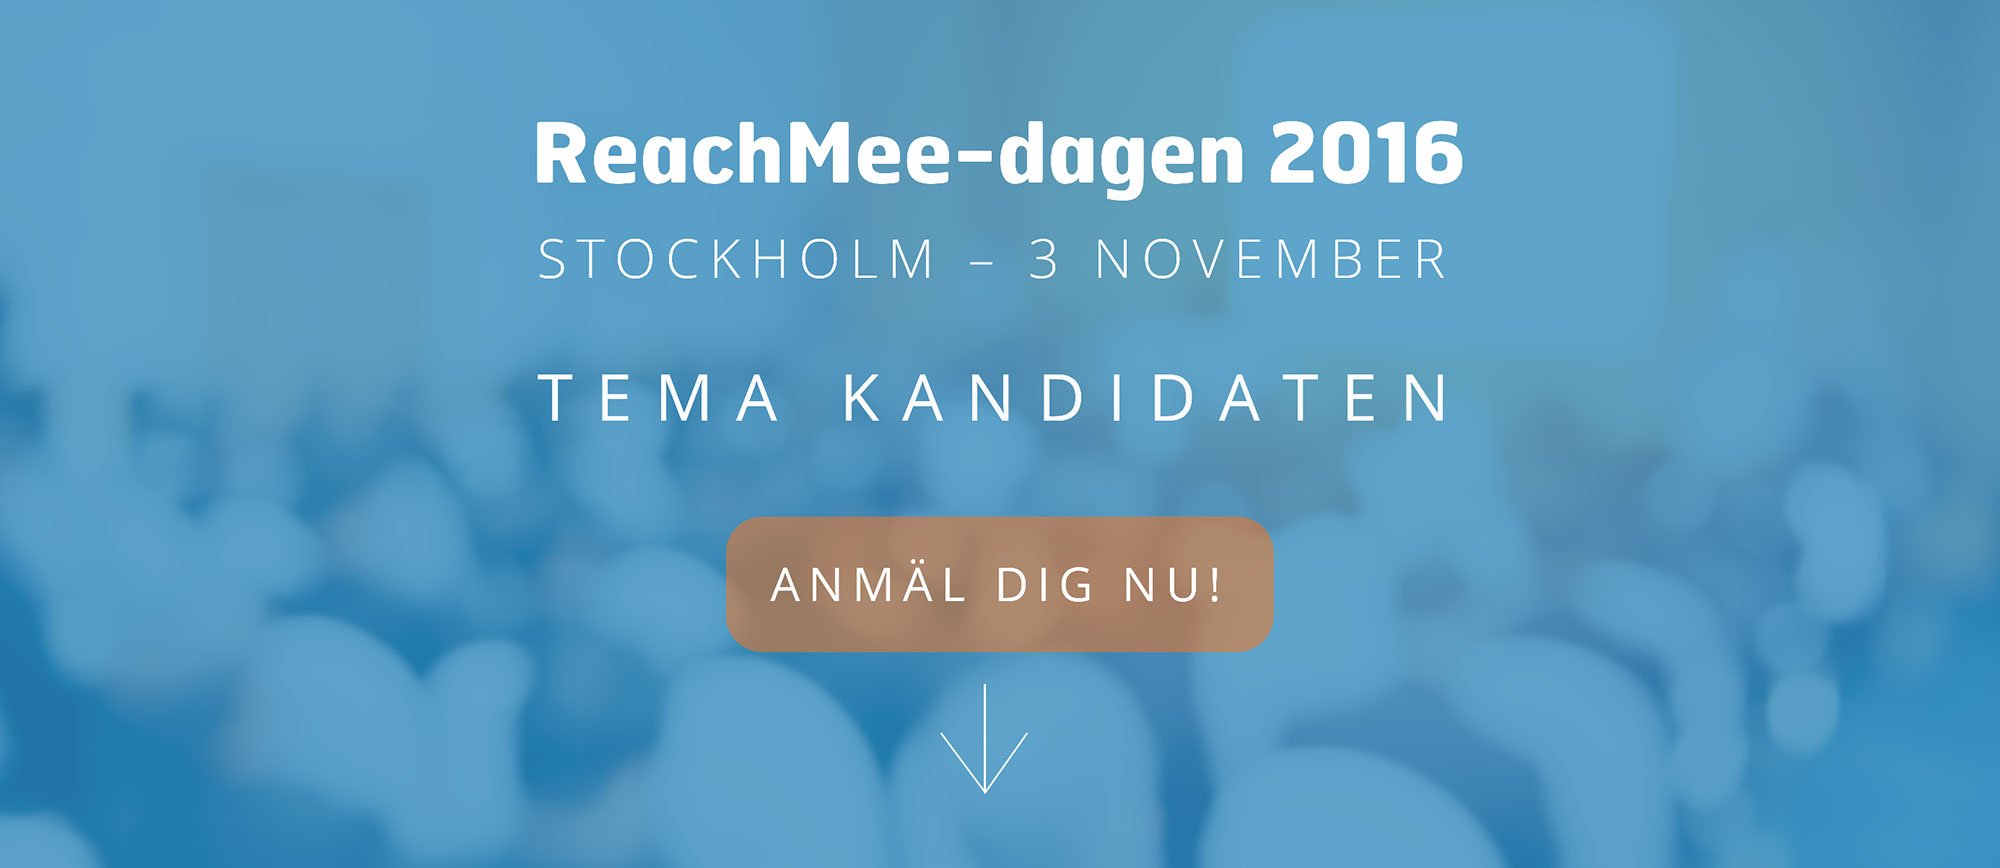 ReachMee_dagen_2016_bakgrund_anmal_dig_nu_program.jpg